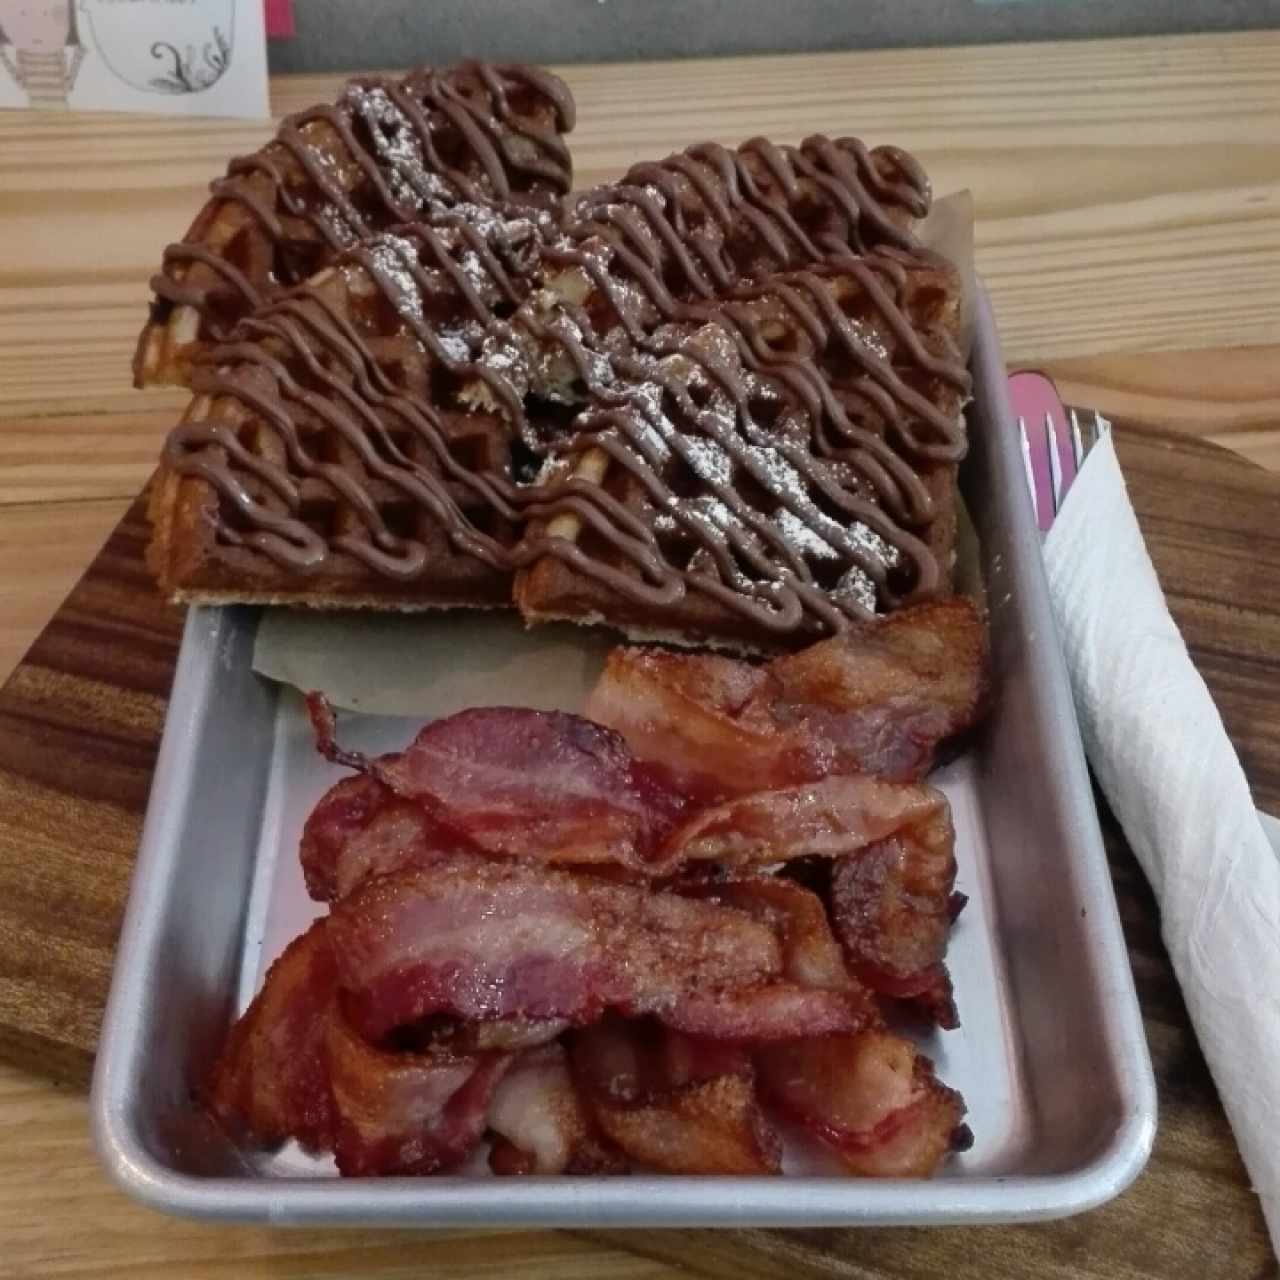 Waffles con nutella + bacon caramelizado